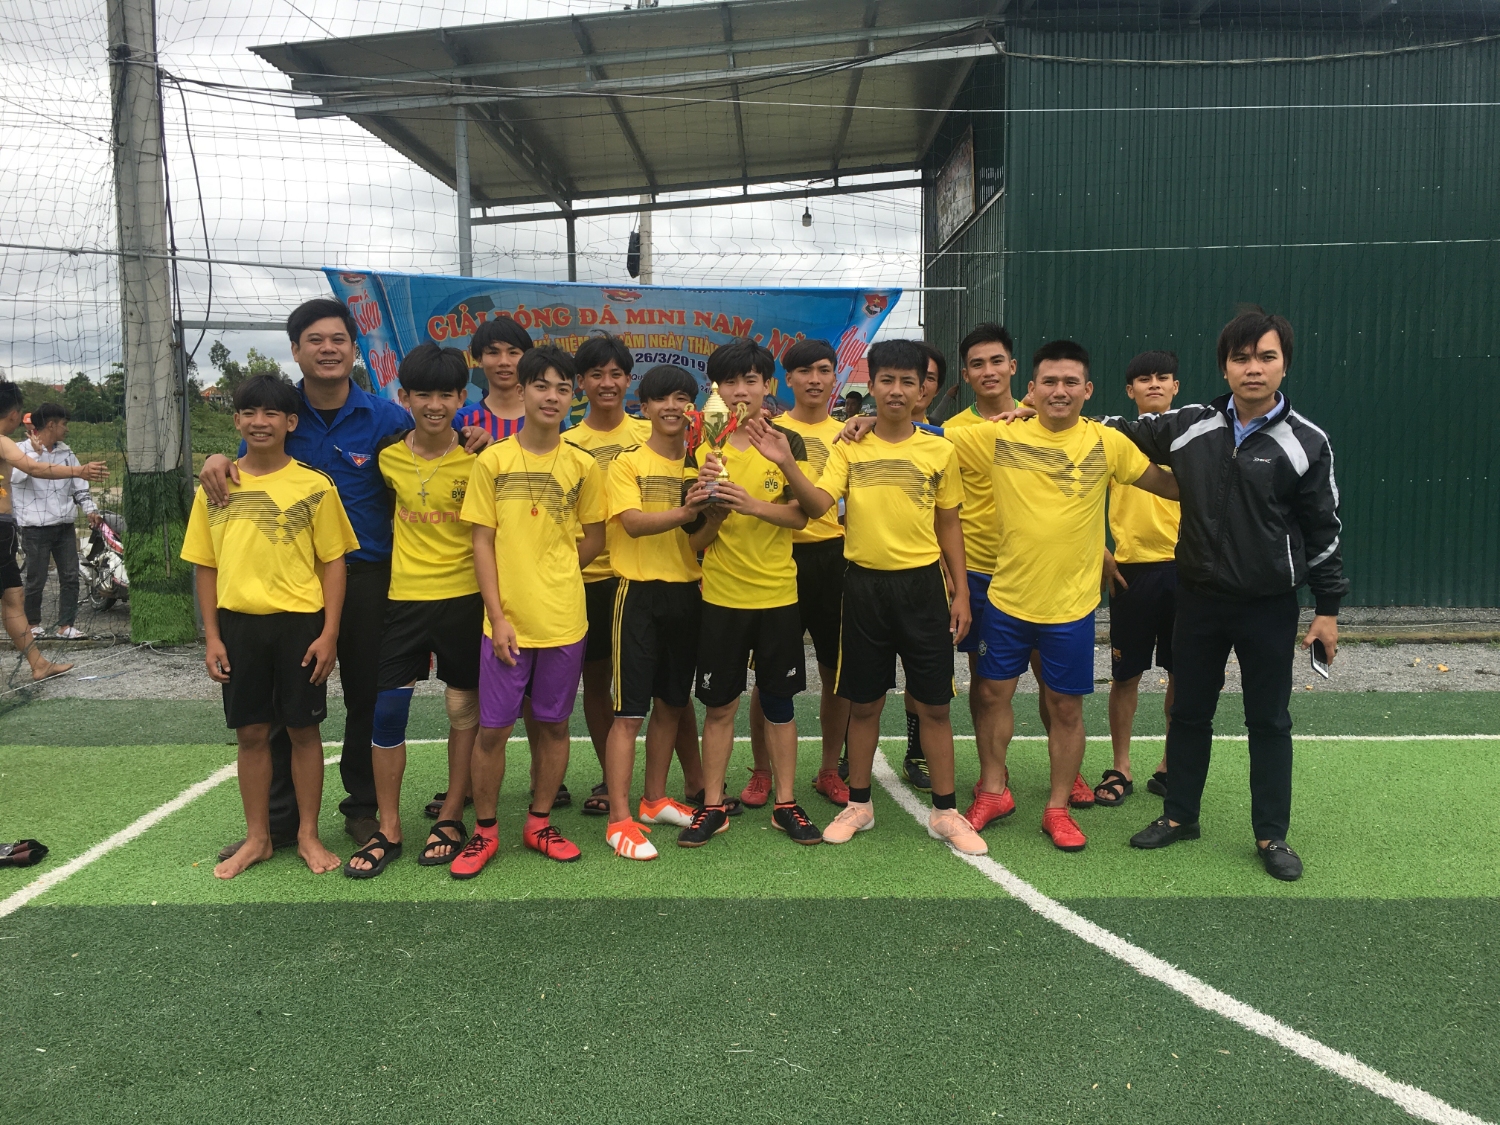 Đoàn thanh niên xã Quảng Lộc tổ chức giải bóng đá mini nam nữ năm 2019